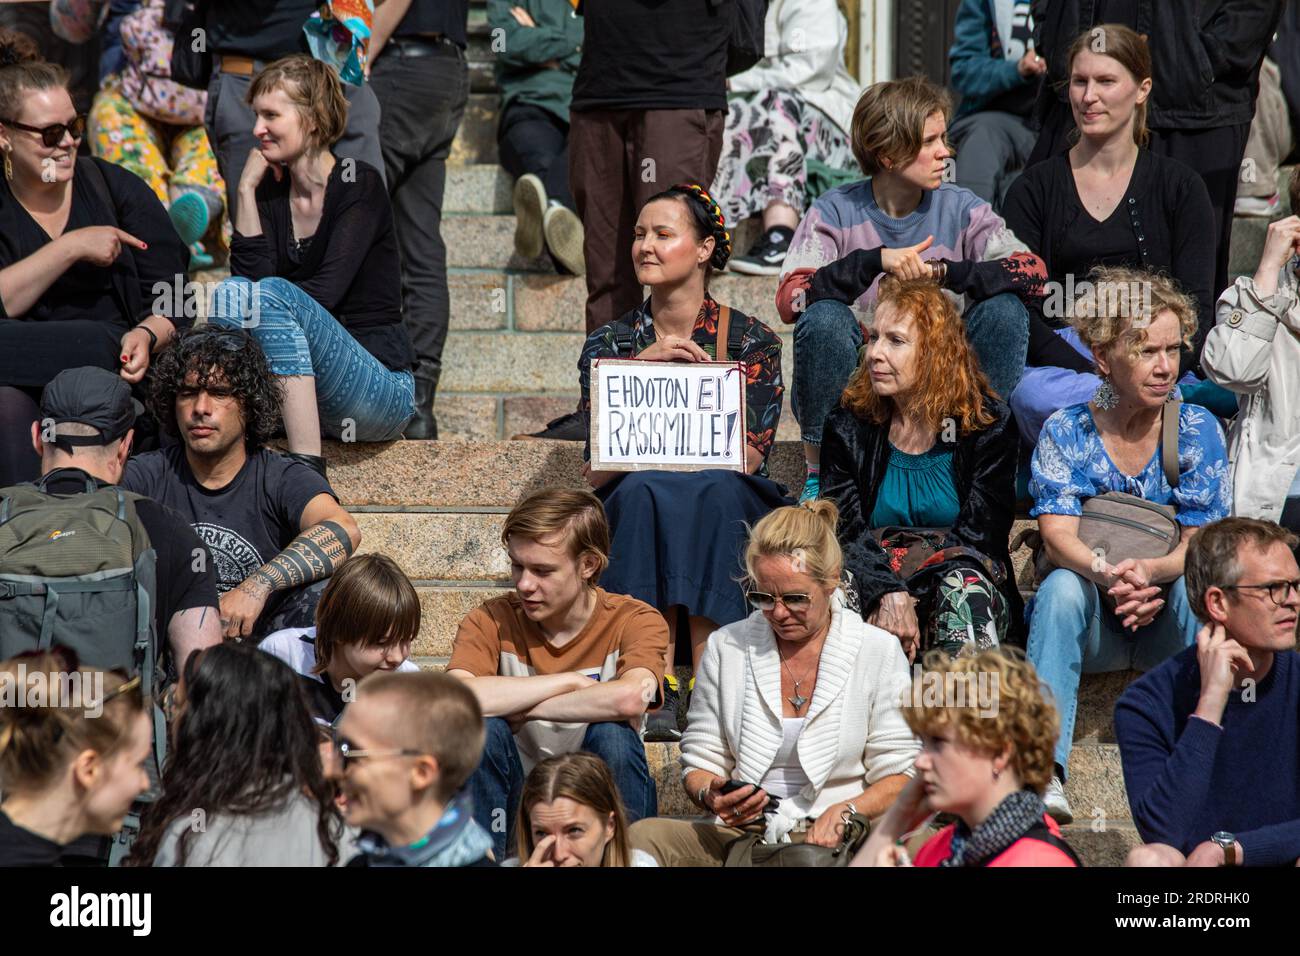 Ehdoton ei rasismille! Donna con un cartello fatto a mano davanti a Nollatoleranssi! Manifestazione contro il razzismo a Helsinki, Finlandia. Foto Stock